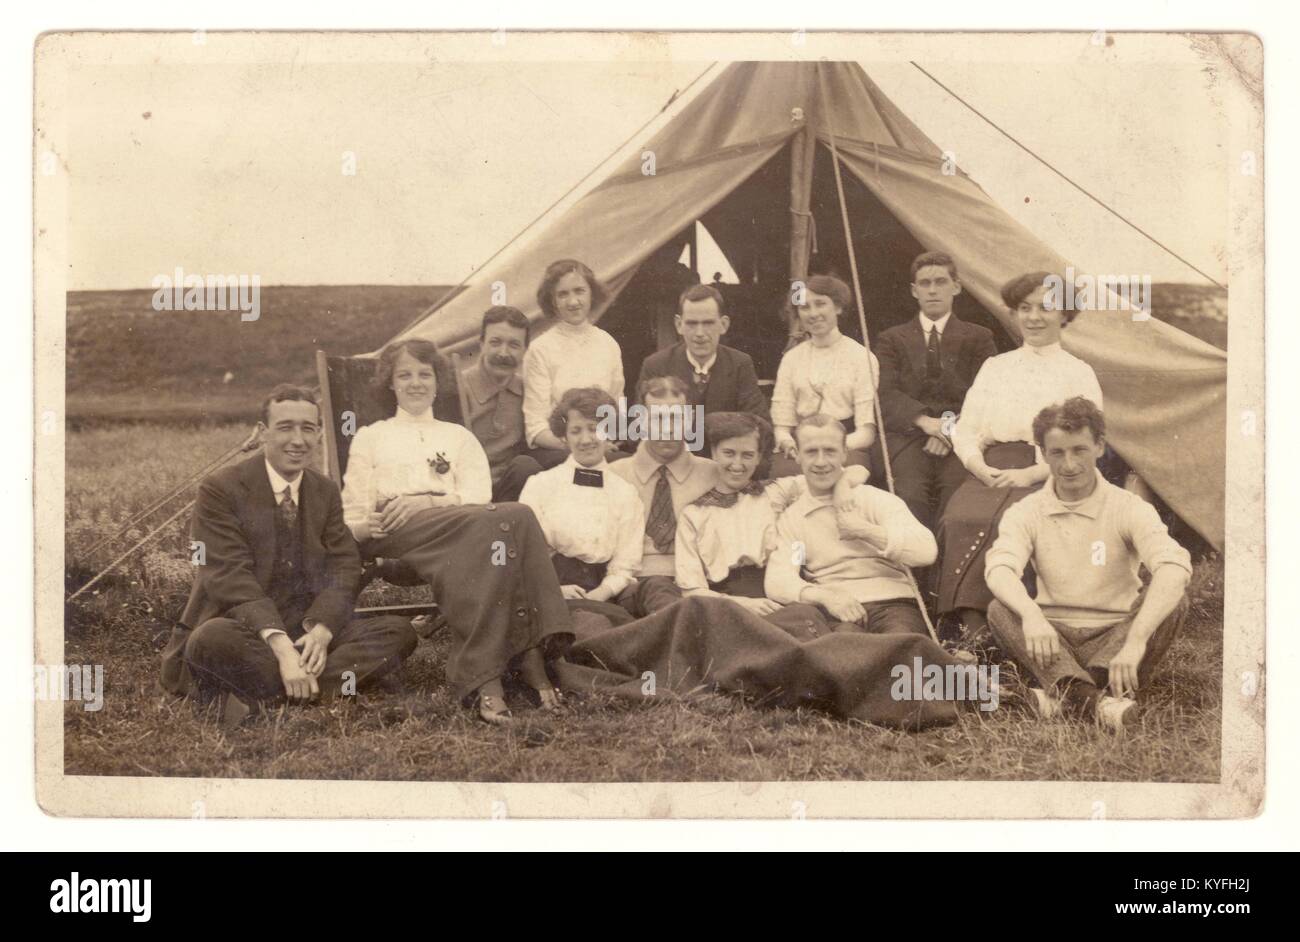 Early1900s carte postale d'un groupe d'hommes et de femmes campant sous toile, se relaxant et s'appréciant à l'extérieur d'une tente de toile, probablement juste avant la Grande Guerre, vers 1913, U.K Banque D'Images